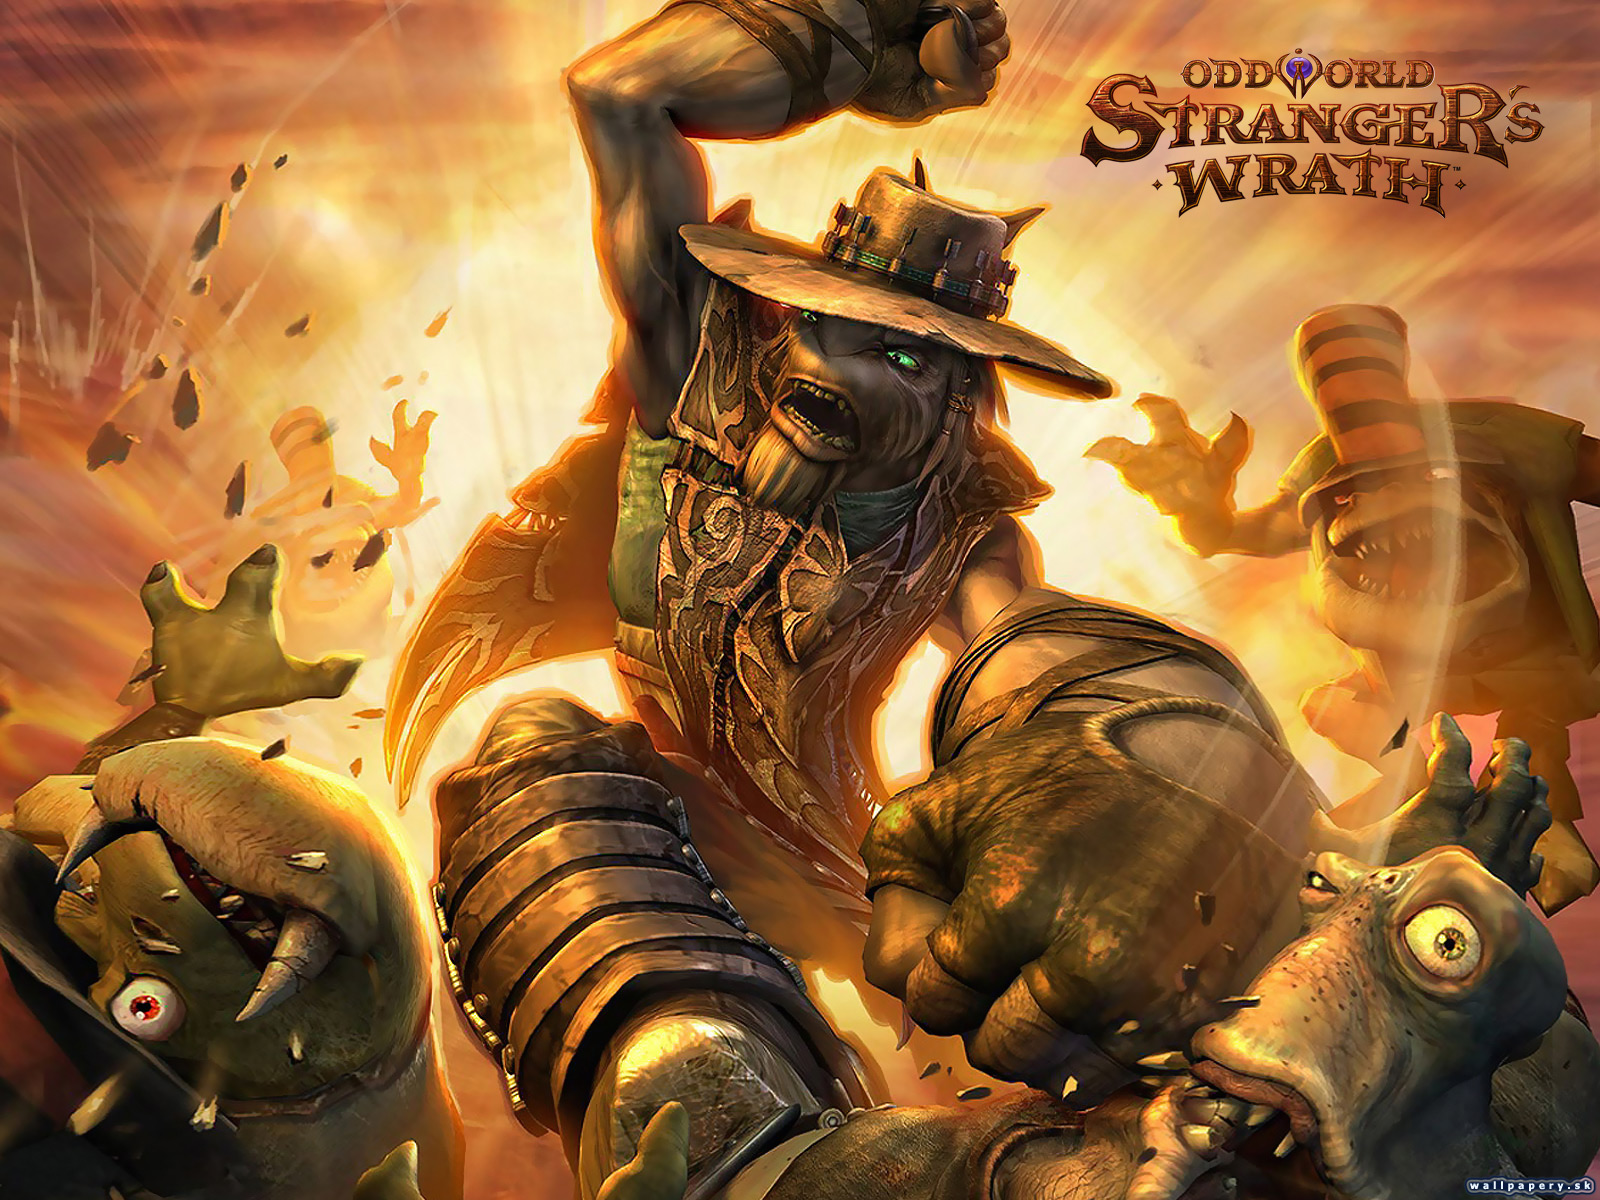 Oddworld: Stranger's Wrath - wallpaper 1